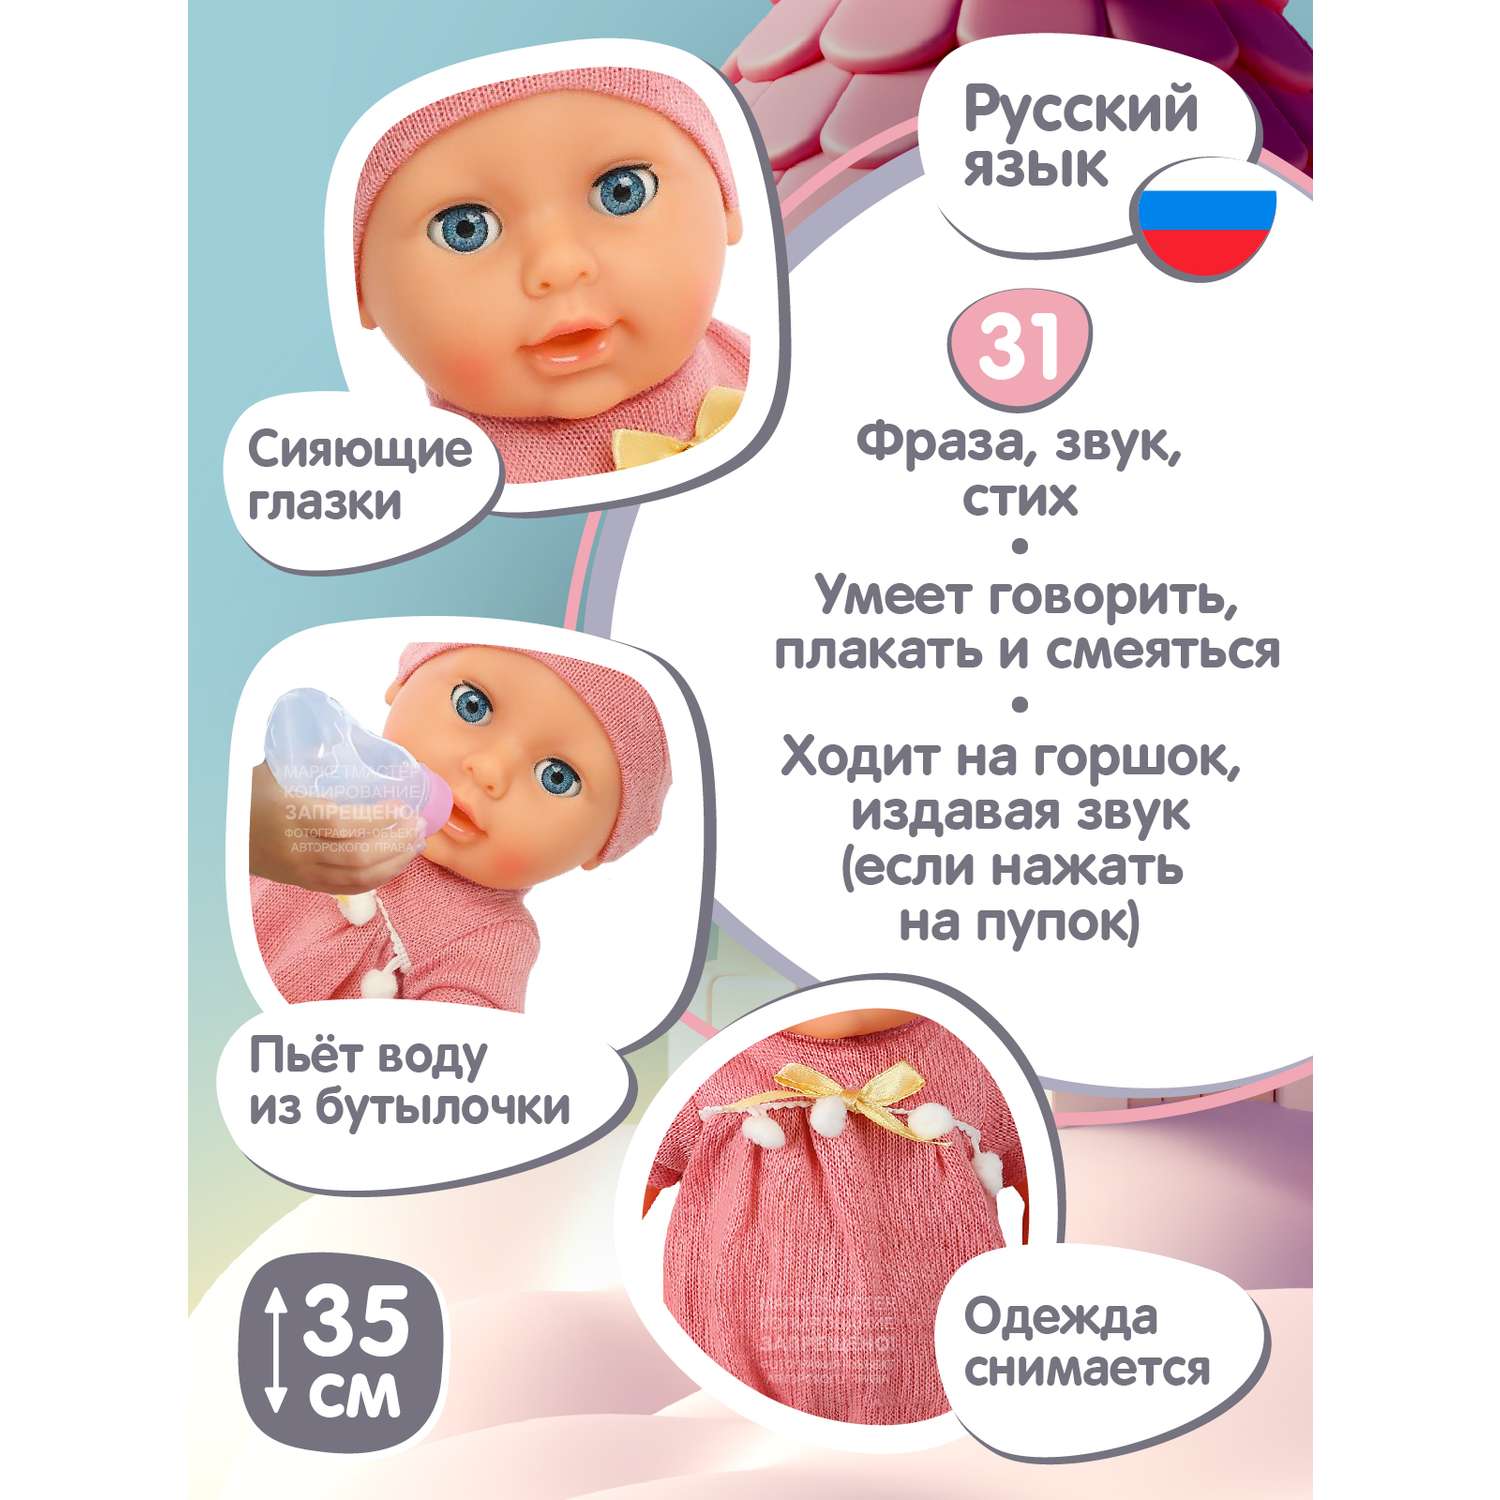 Кукла пупс AMORE BELLO интерактивный на русском языке реагирует на прикосновения пьет писает засыпает JB0211588 - фото 3